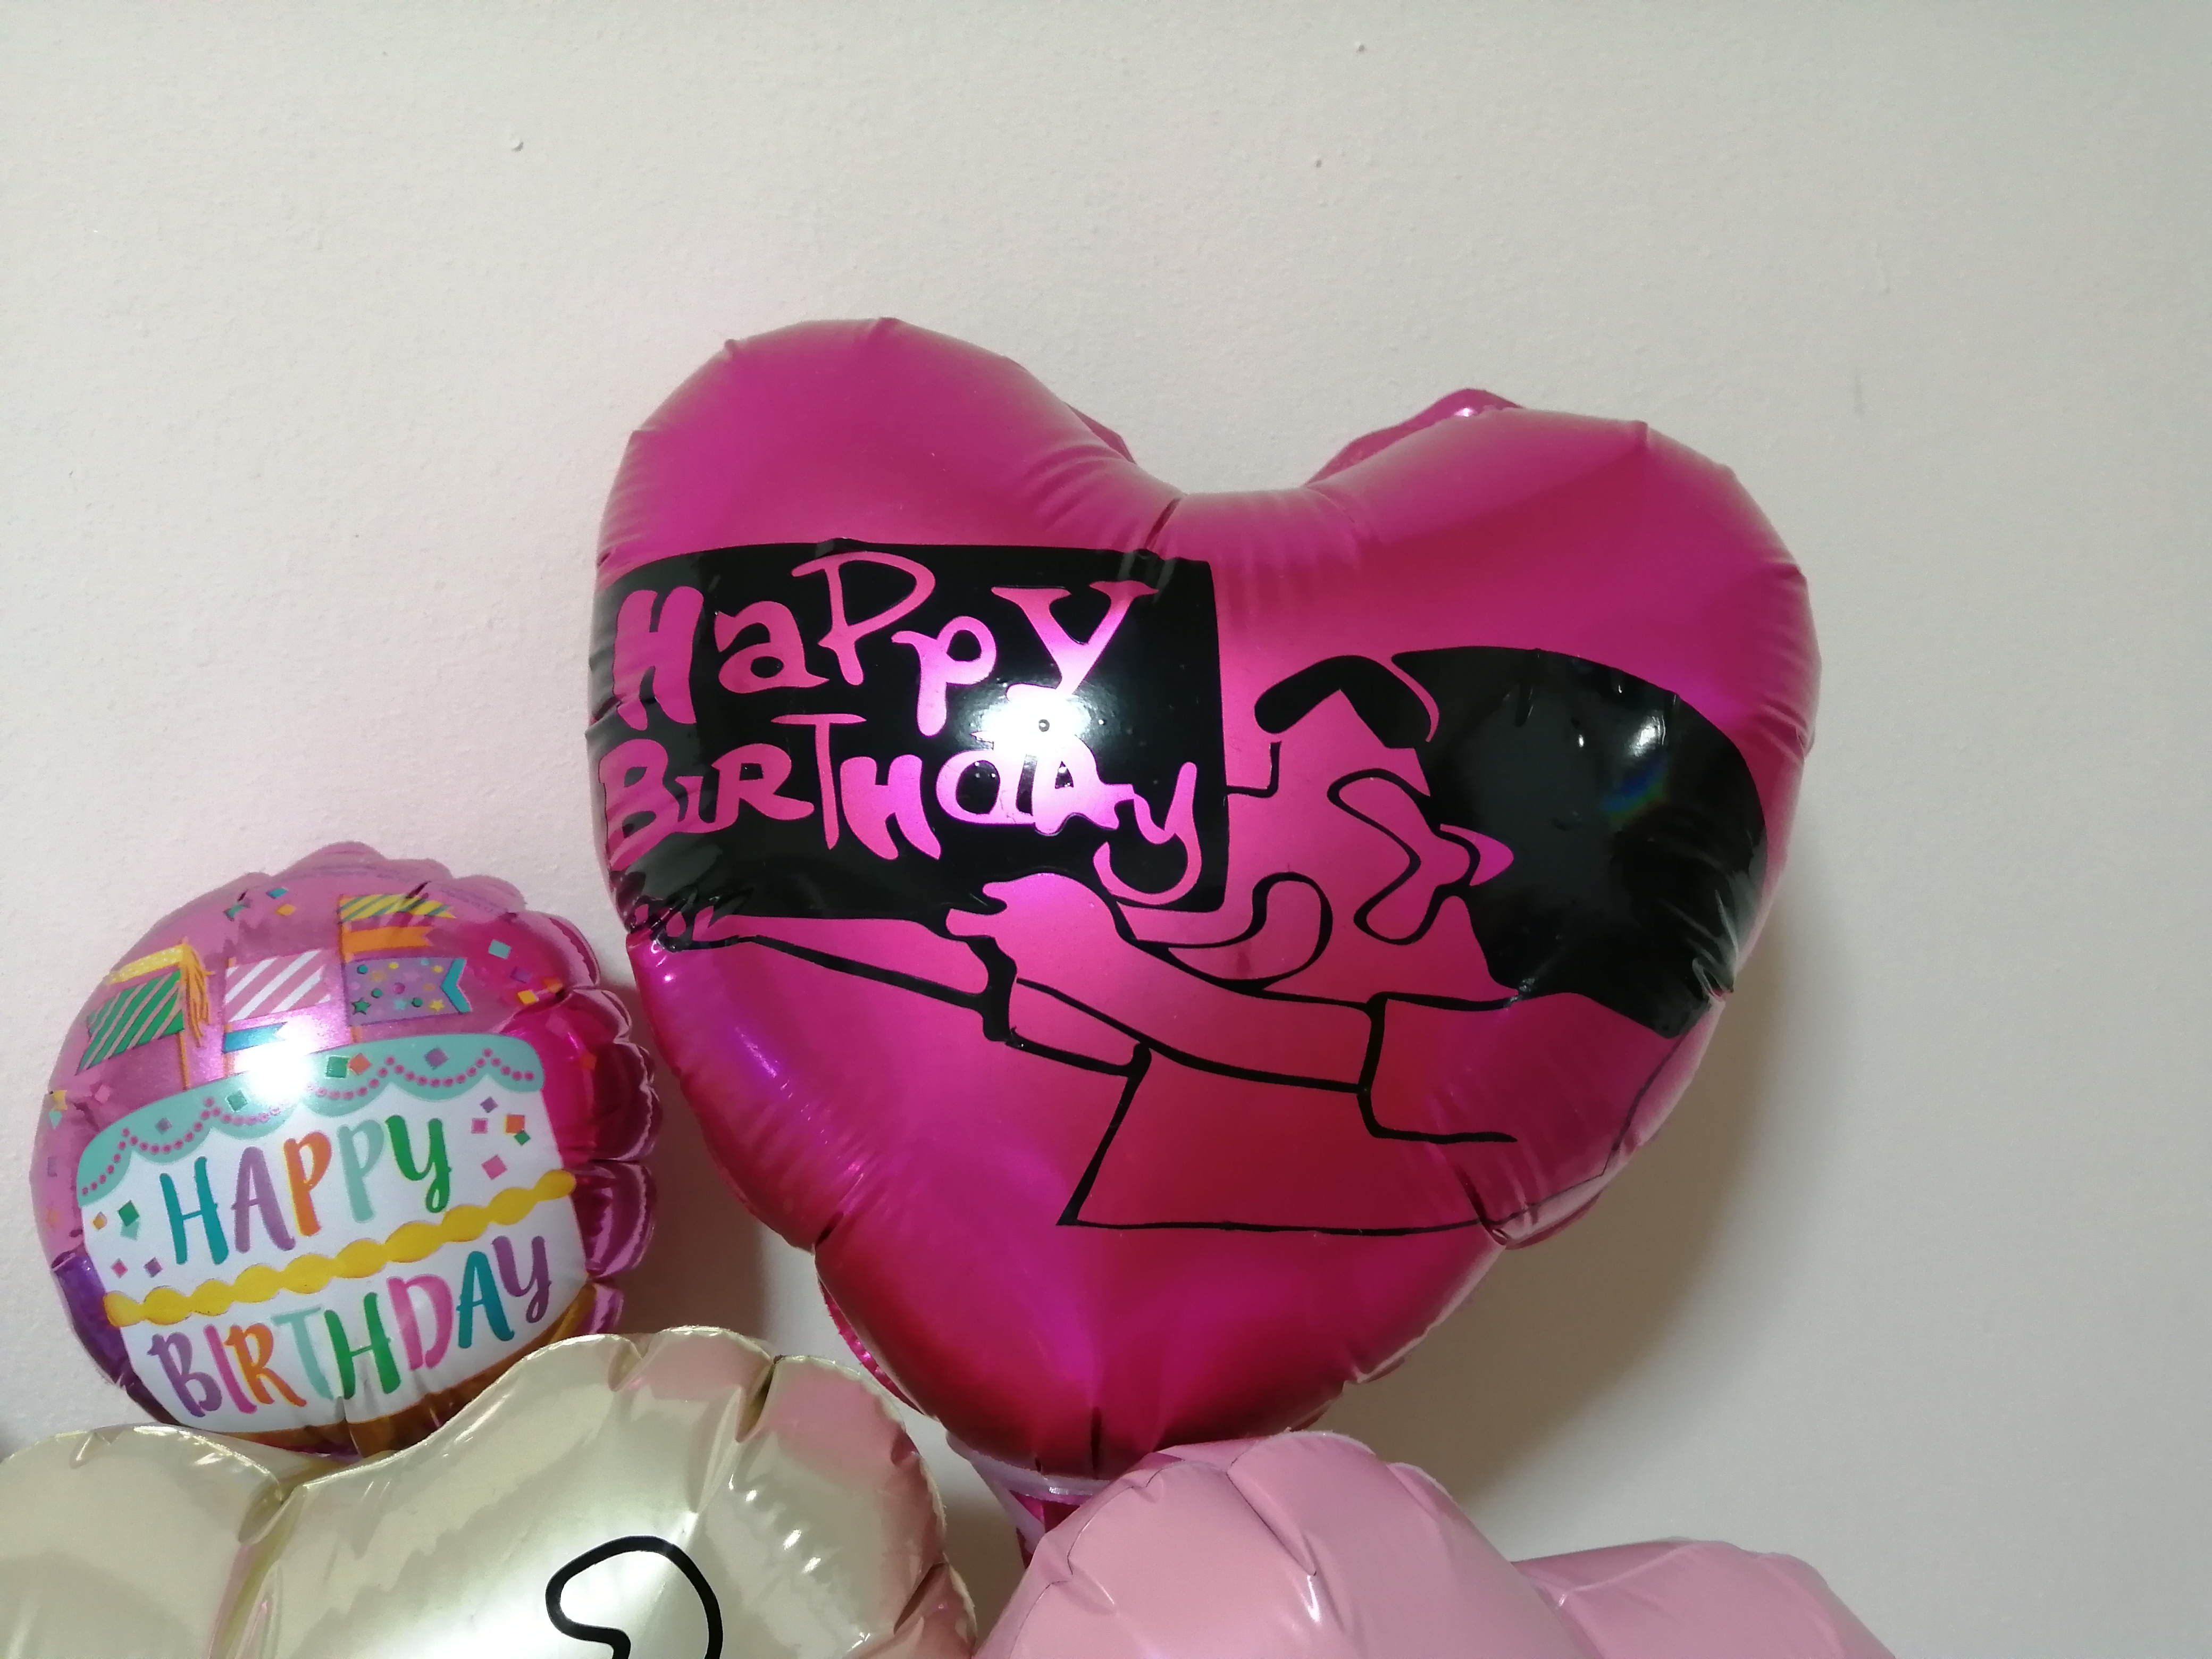 ｵｰﾀﾞｰﾒｲﾄﾞ ｸﾚﾖﾝしんちゃん happy birthday higs balloon to cherish eternally